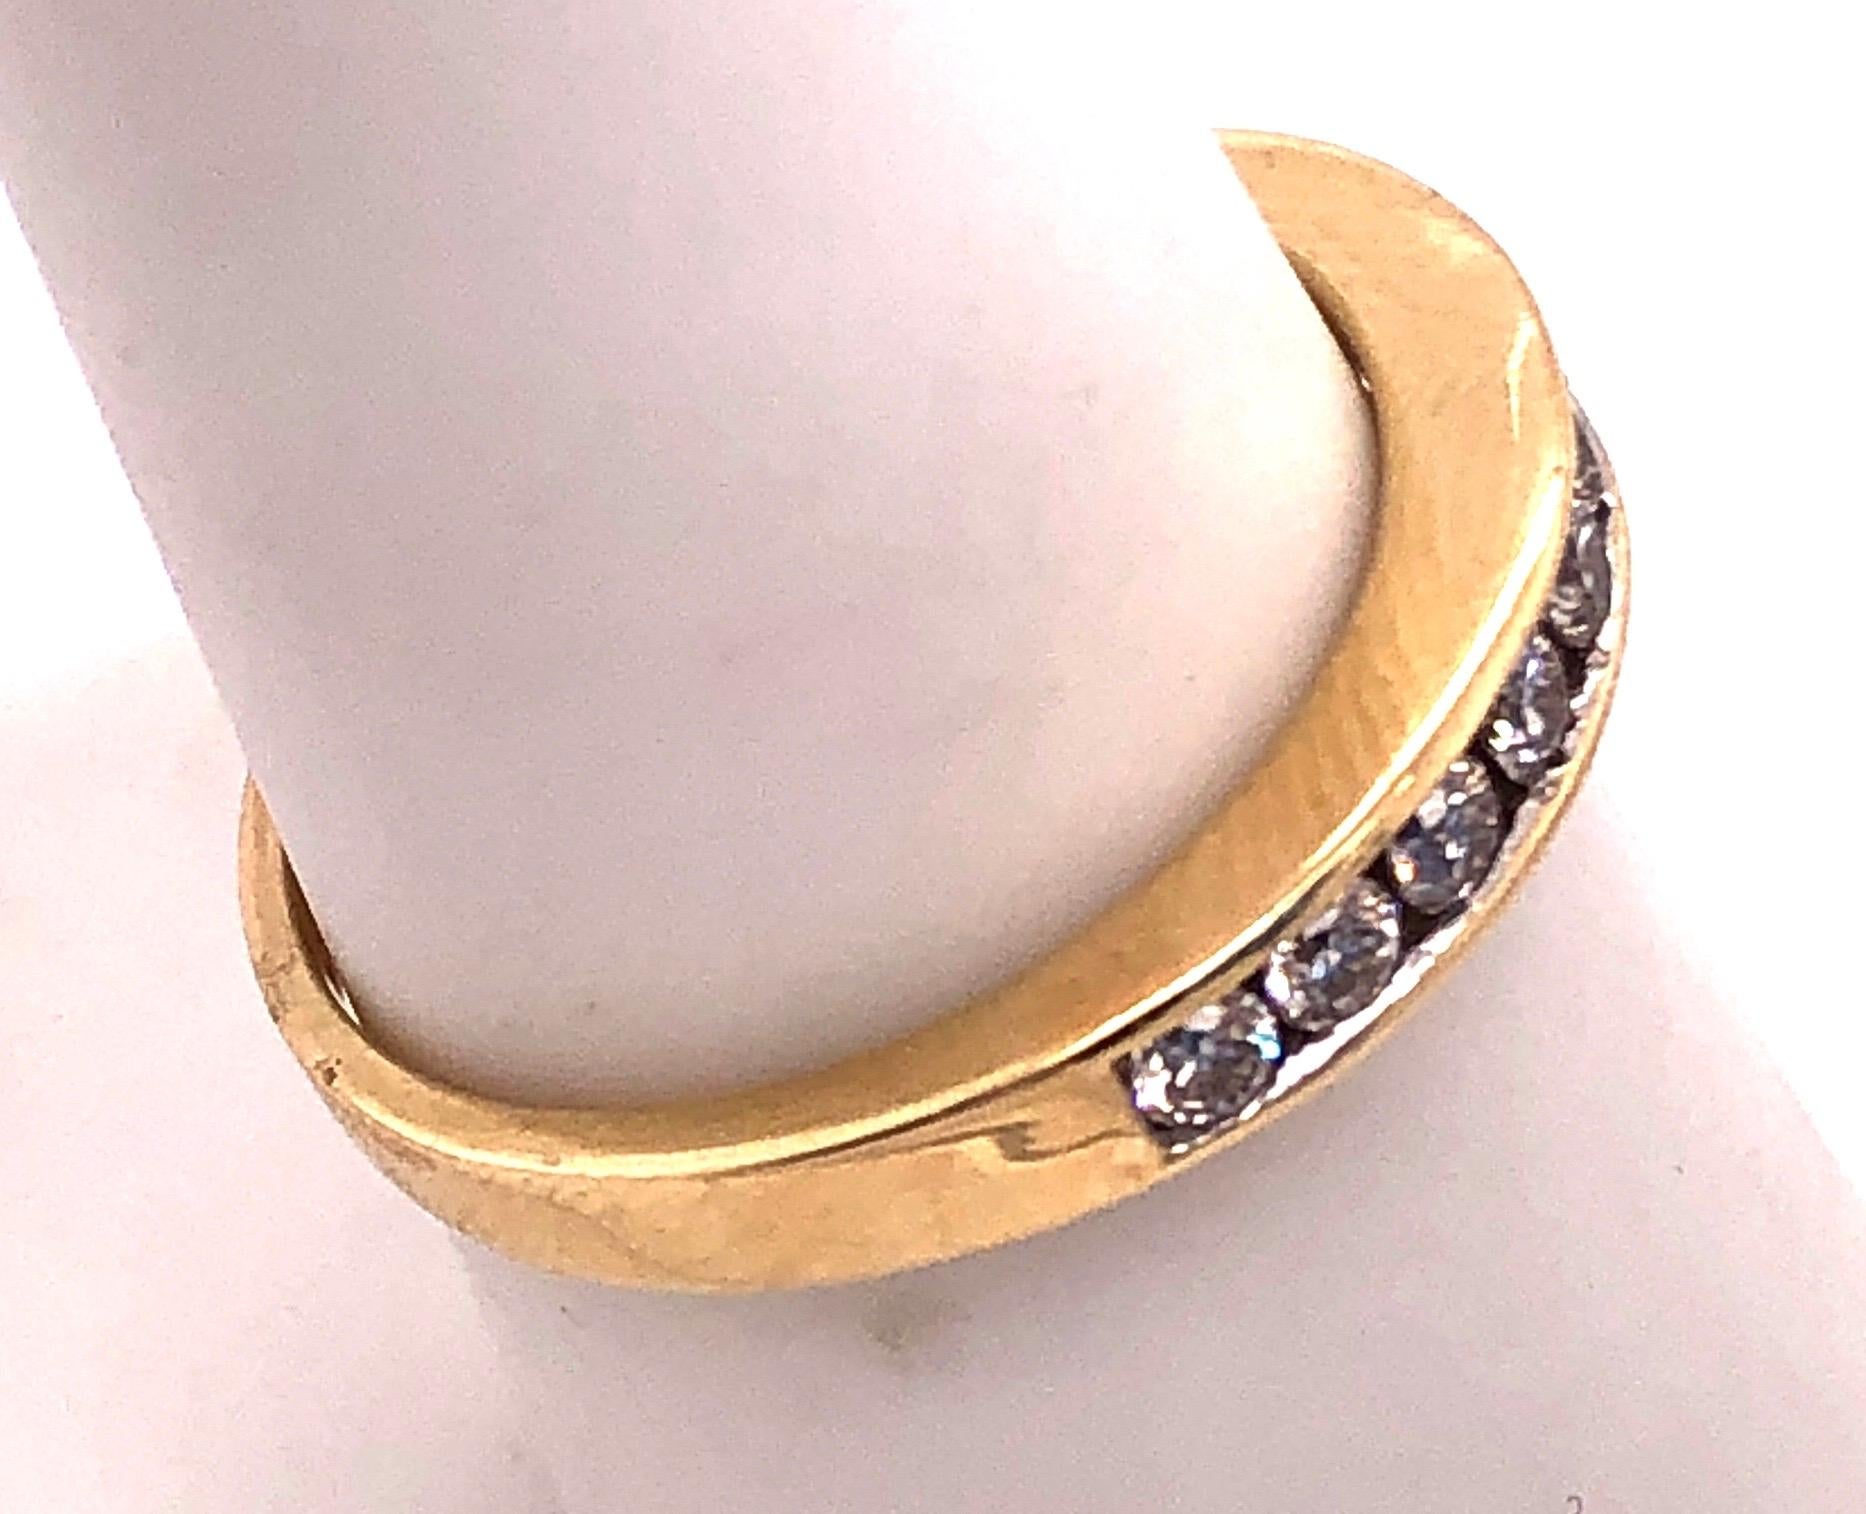 14 Karat Gelbgold und Diamantband Hochzeitstag Ring 0,75 TDW.
Größe 5,25
2,71 Gramm Gesamtgewicht.